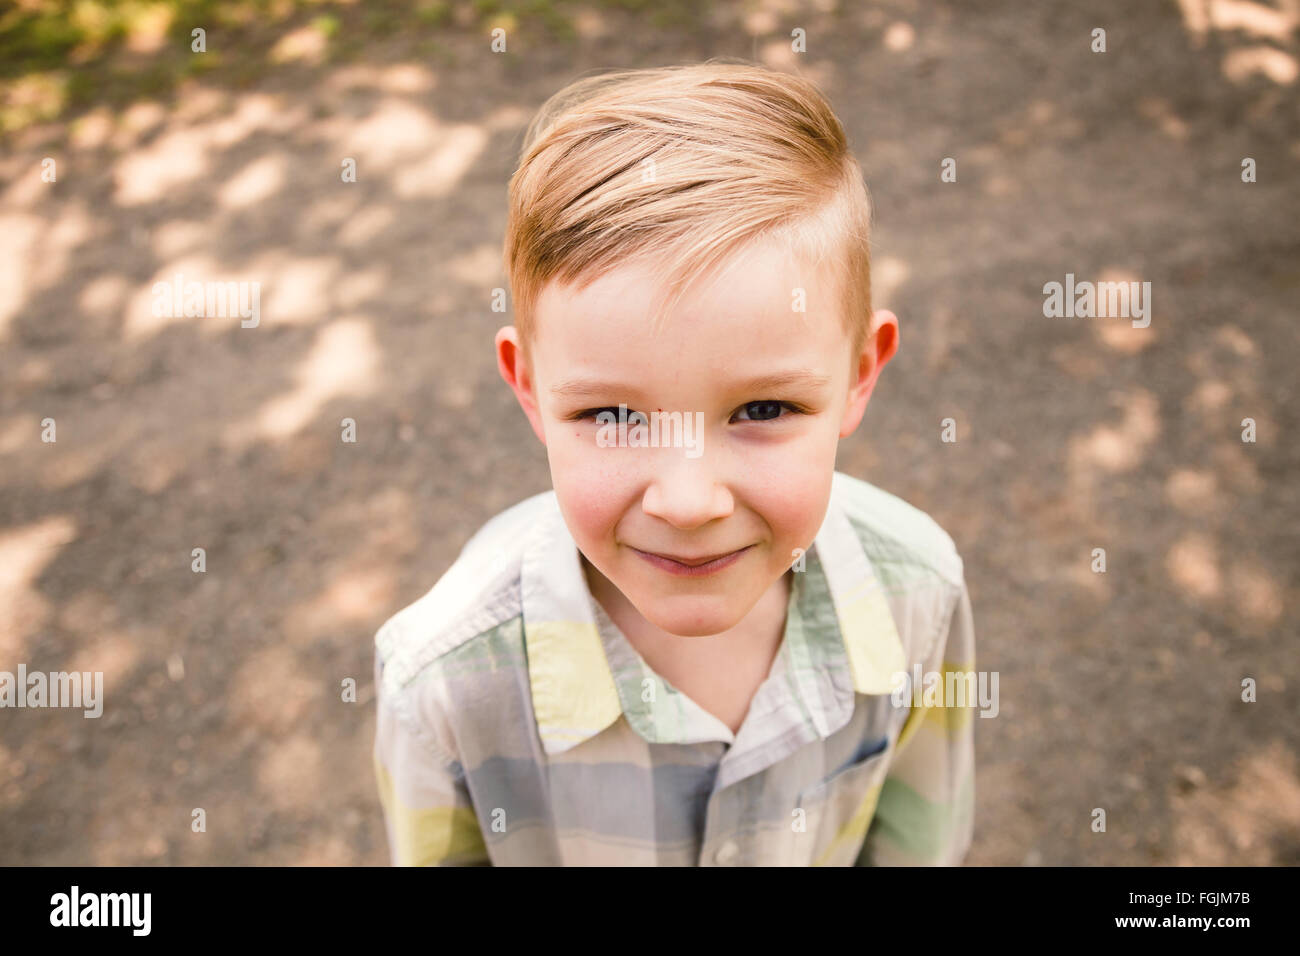 Junge im Freien in einem Lifestyle-Porträt mit natürlichem Licht. Stockfoto